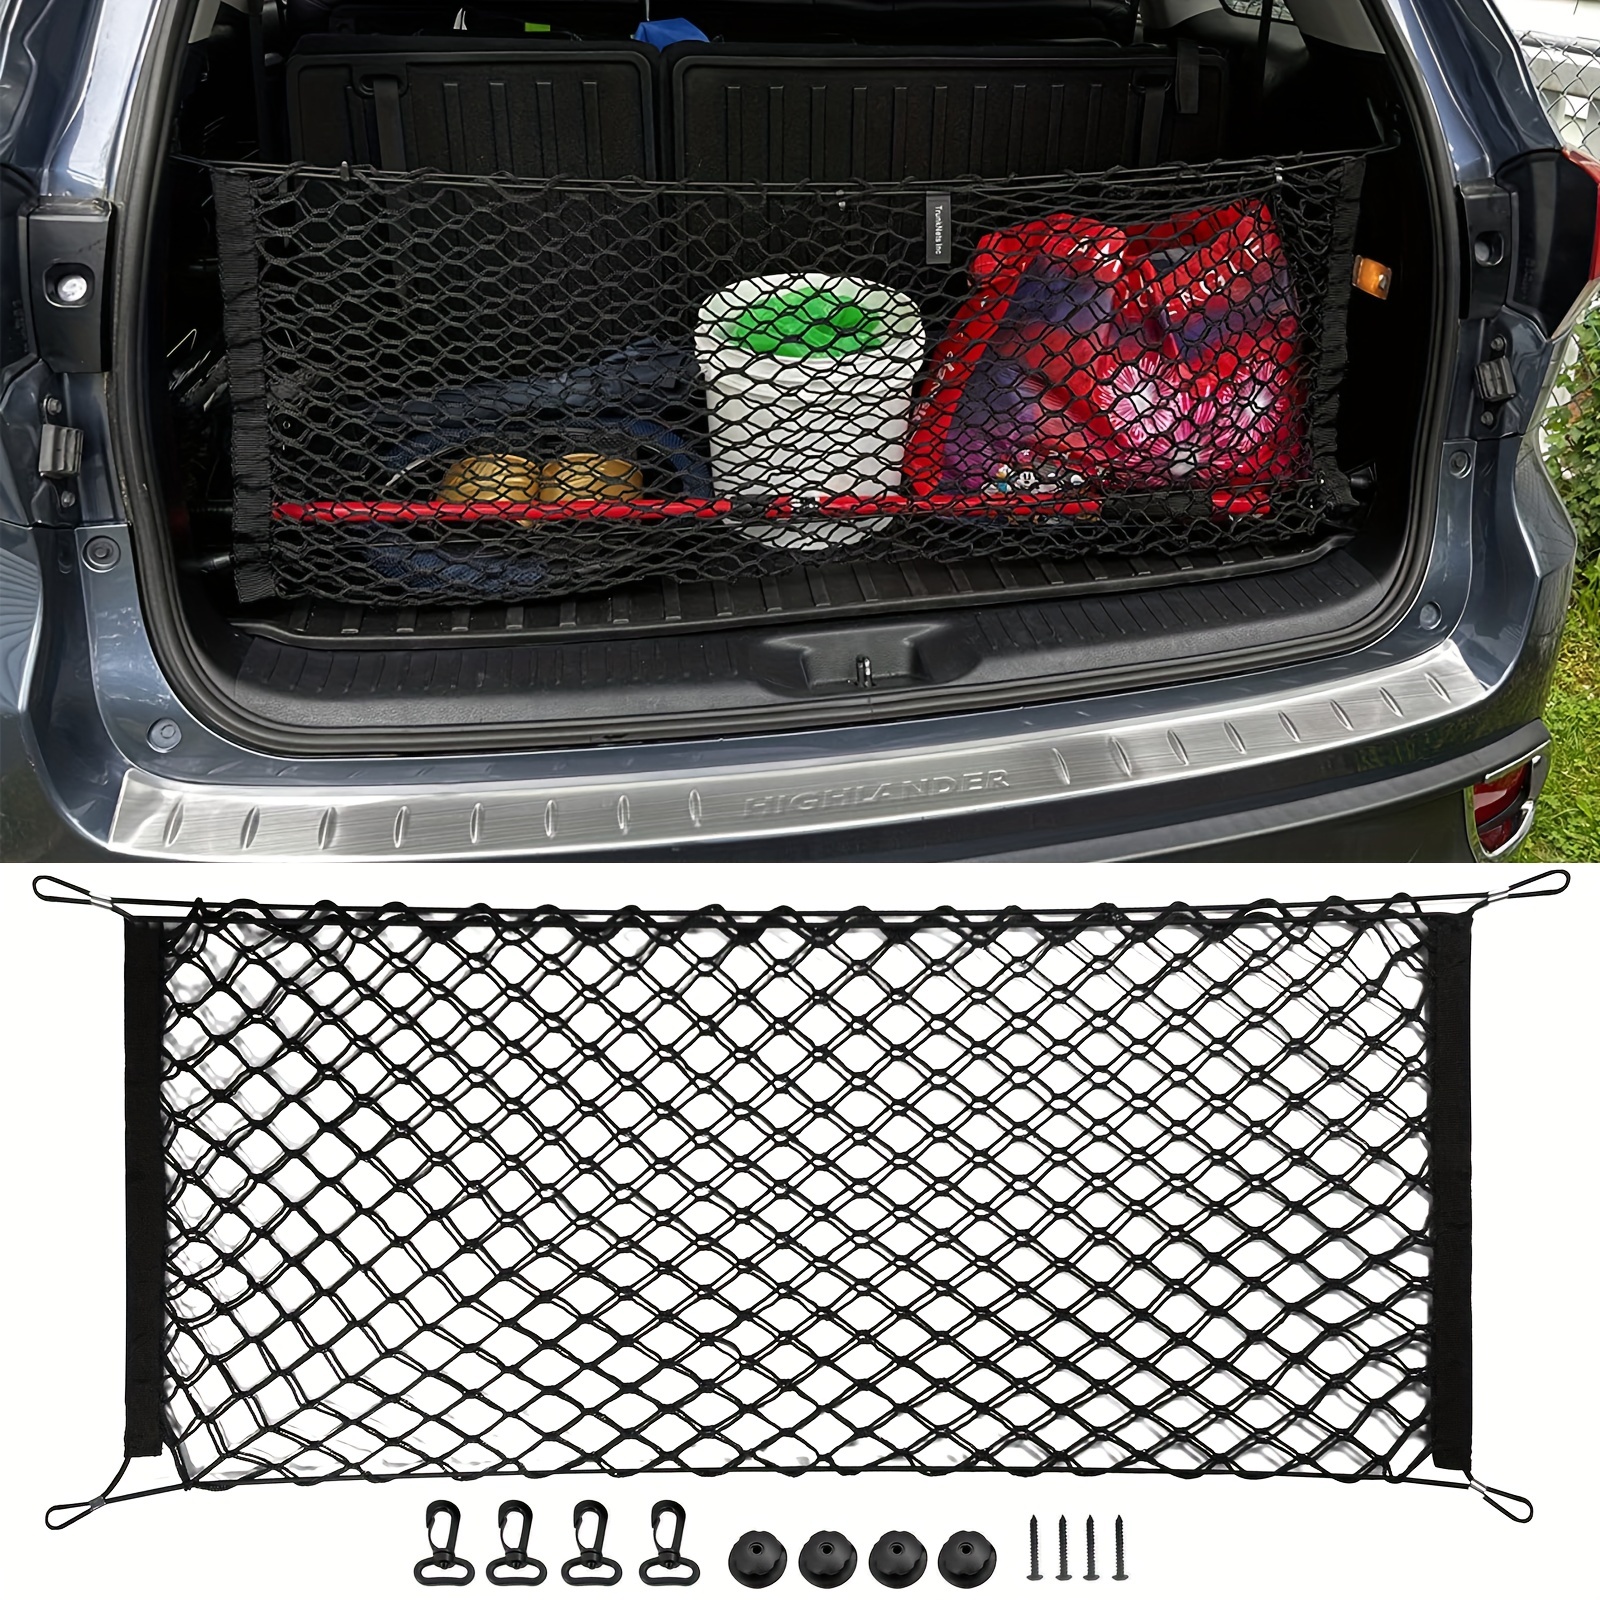 Gepäcknetz hinten für SUV Auto Kofferraum Netz Organizer Automotive Cargo  Netze : : Automotive